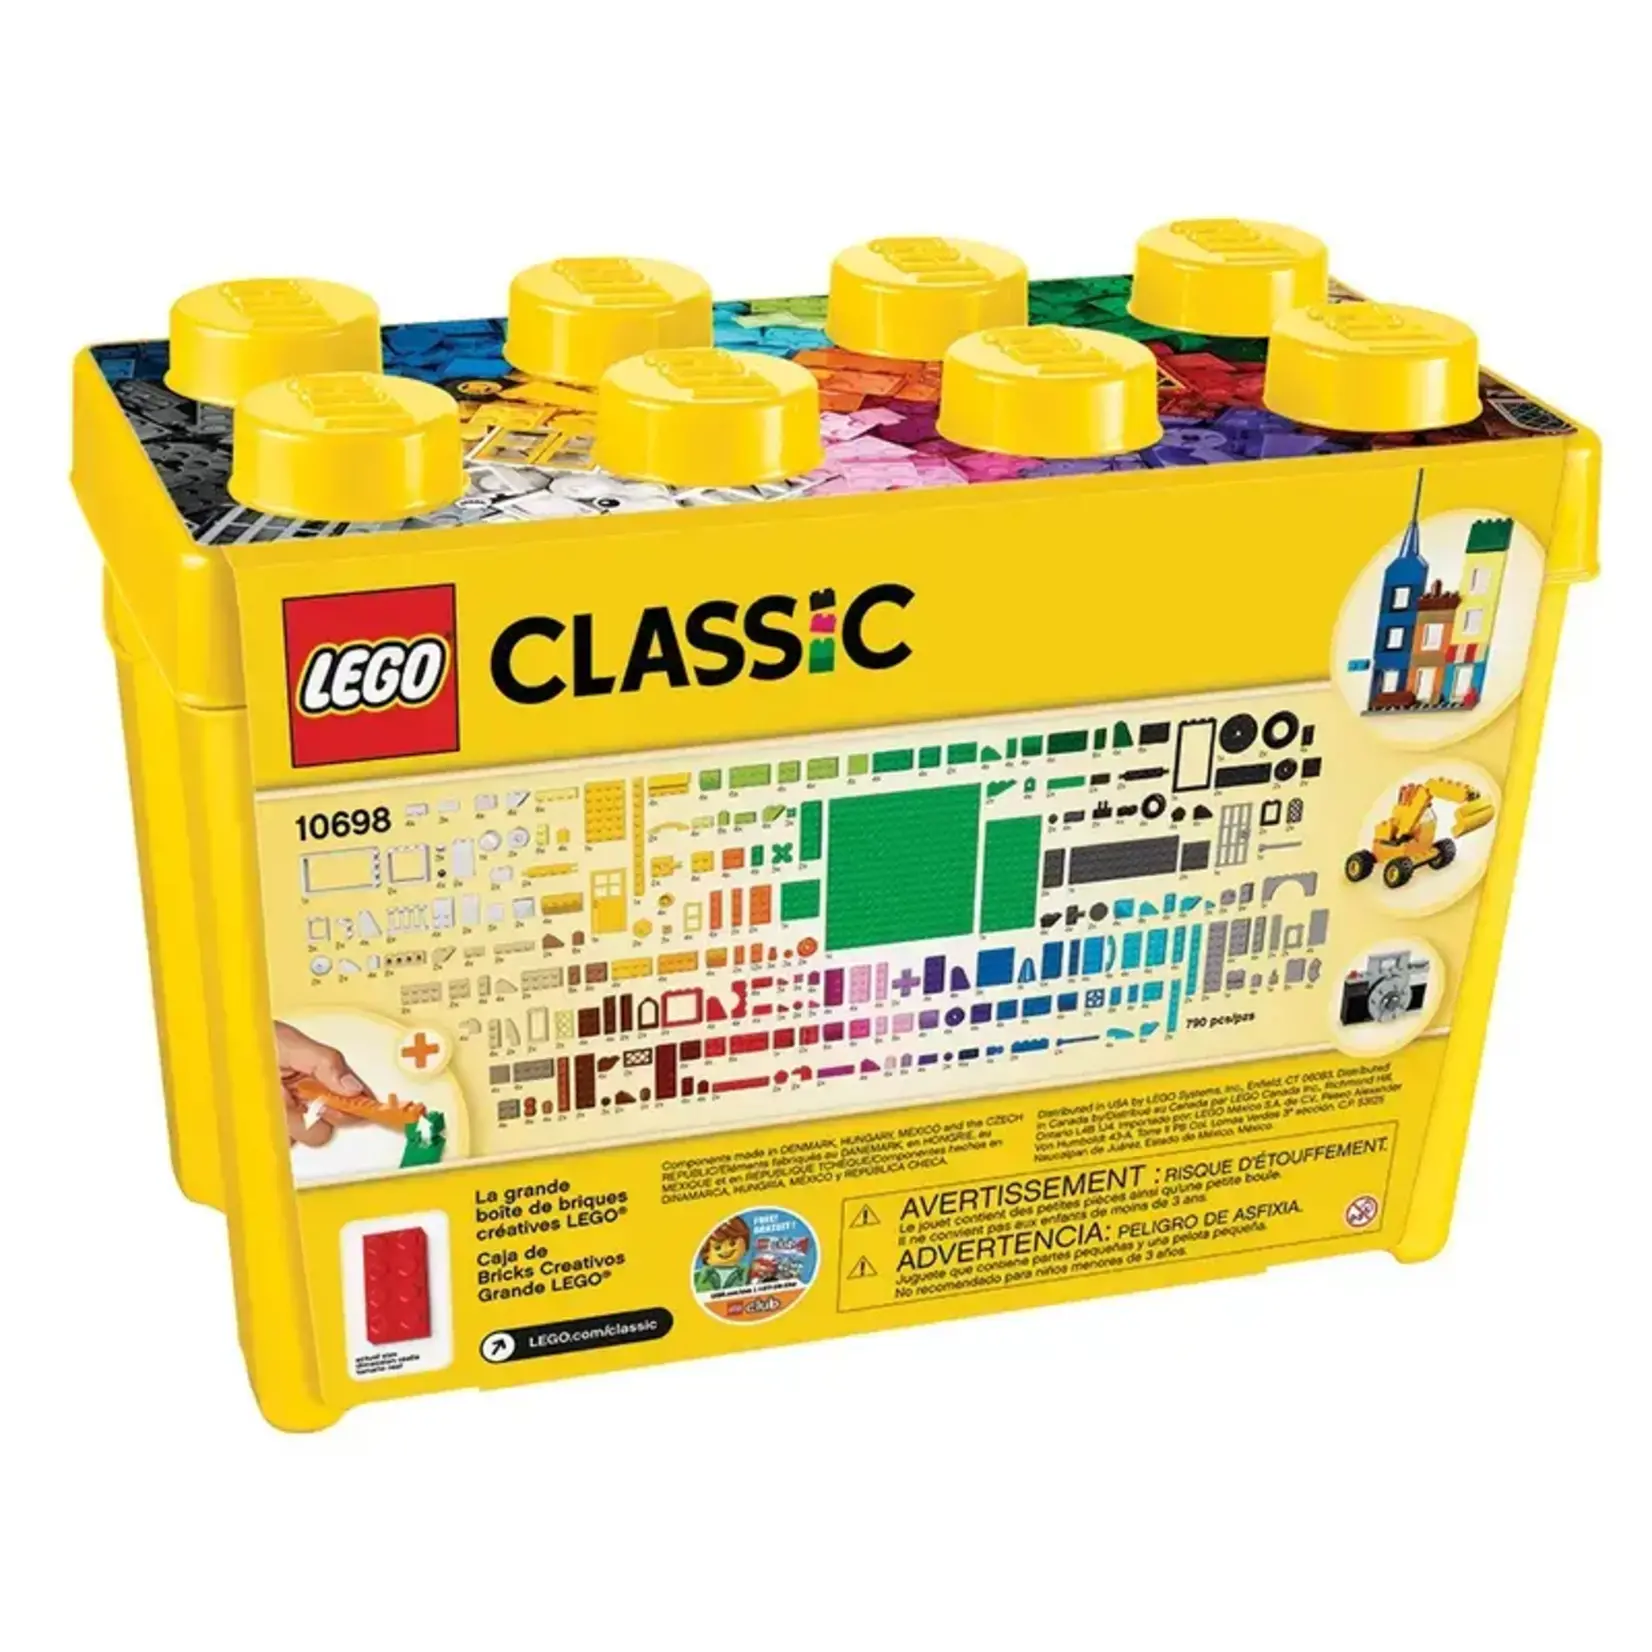 Lego Classic Large Brick Box